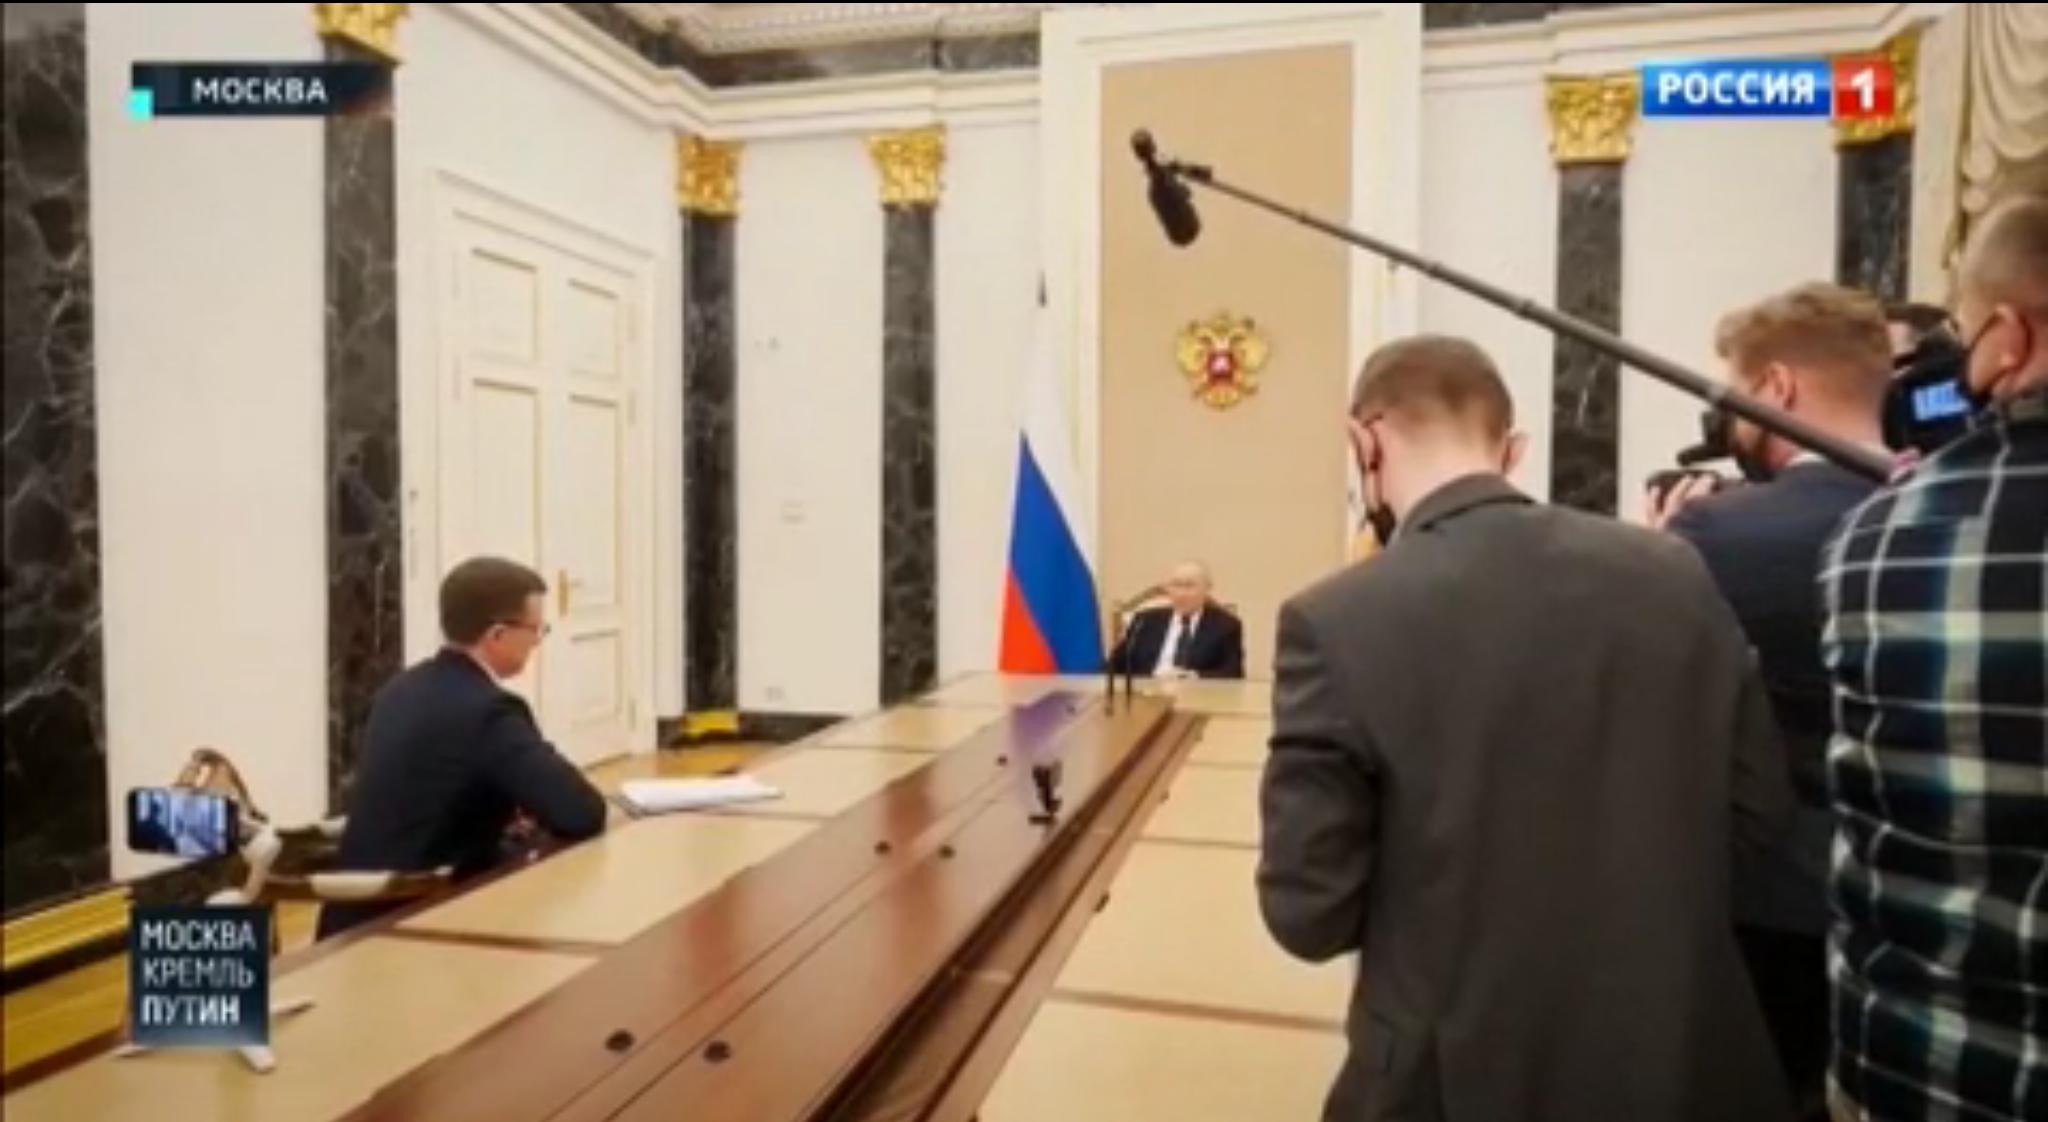 Putin siedzi u szczytu bardzo długiego stołu. Dźwiek zbiera mikrofon na długim wysięgniku